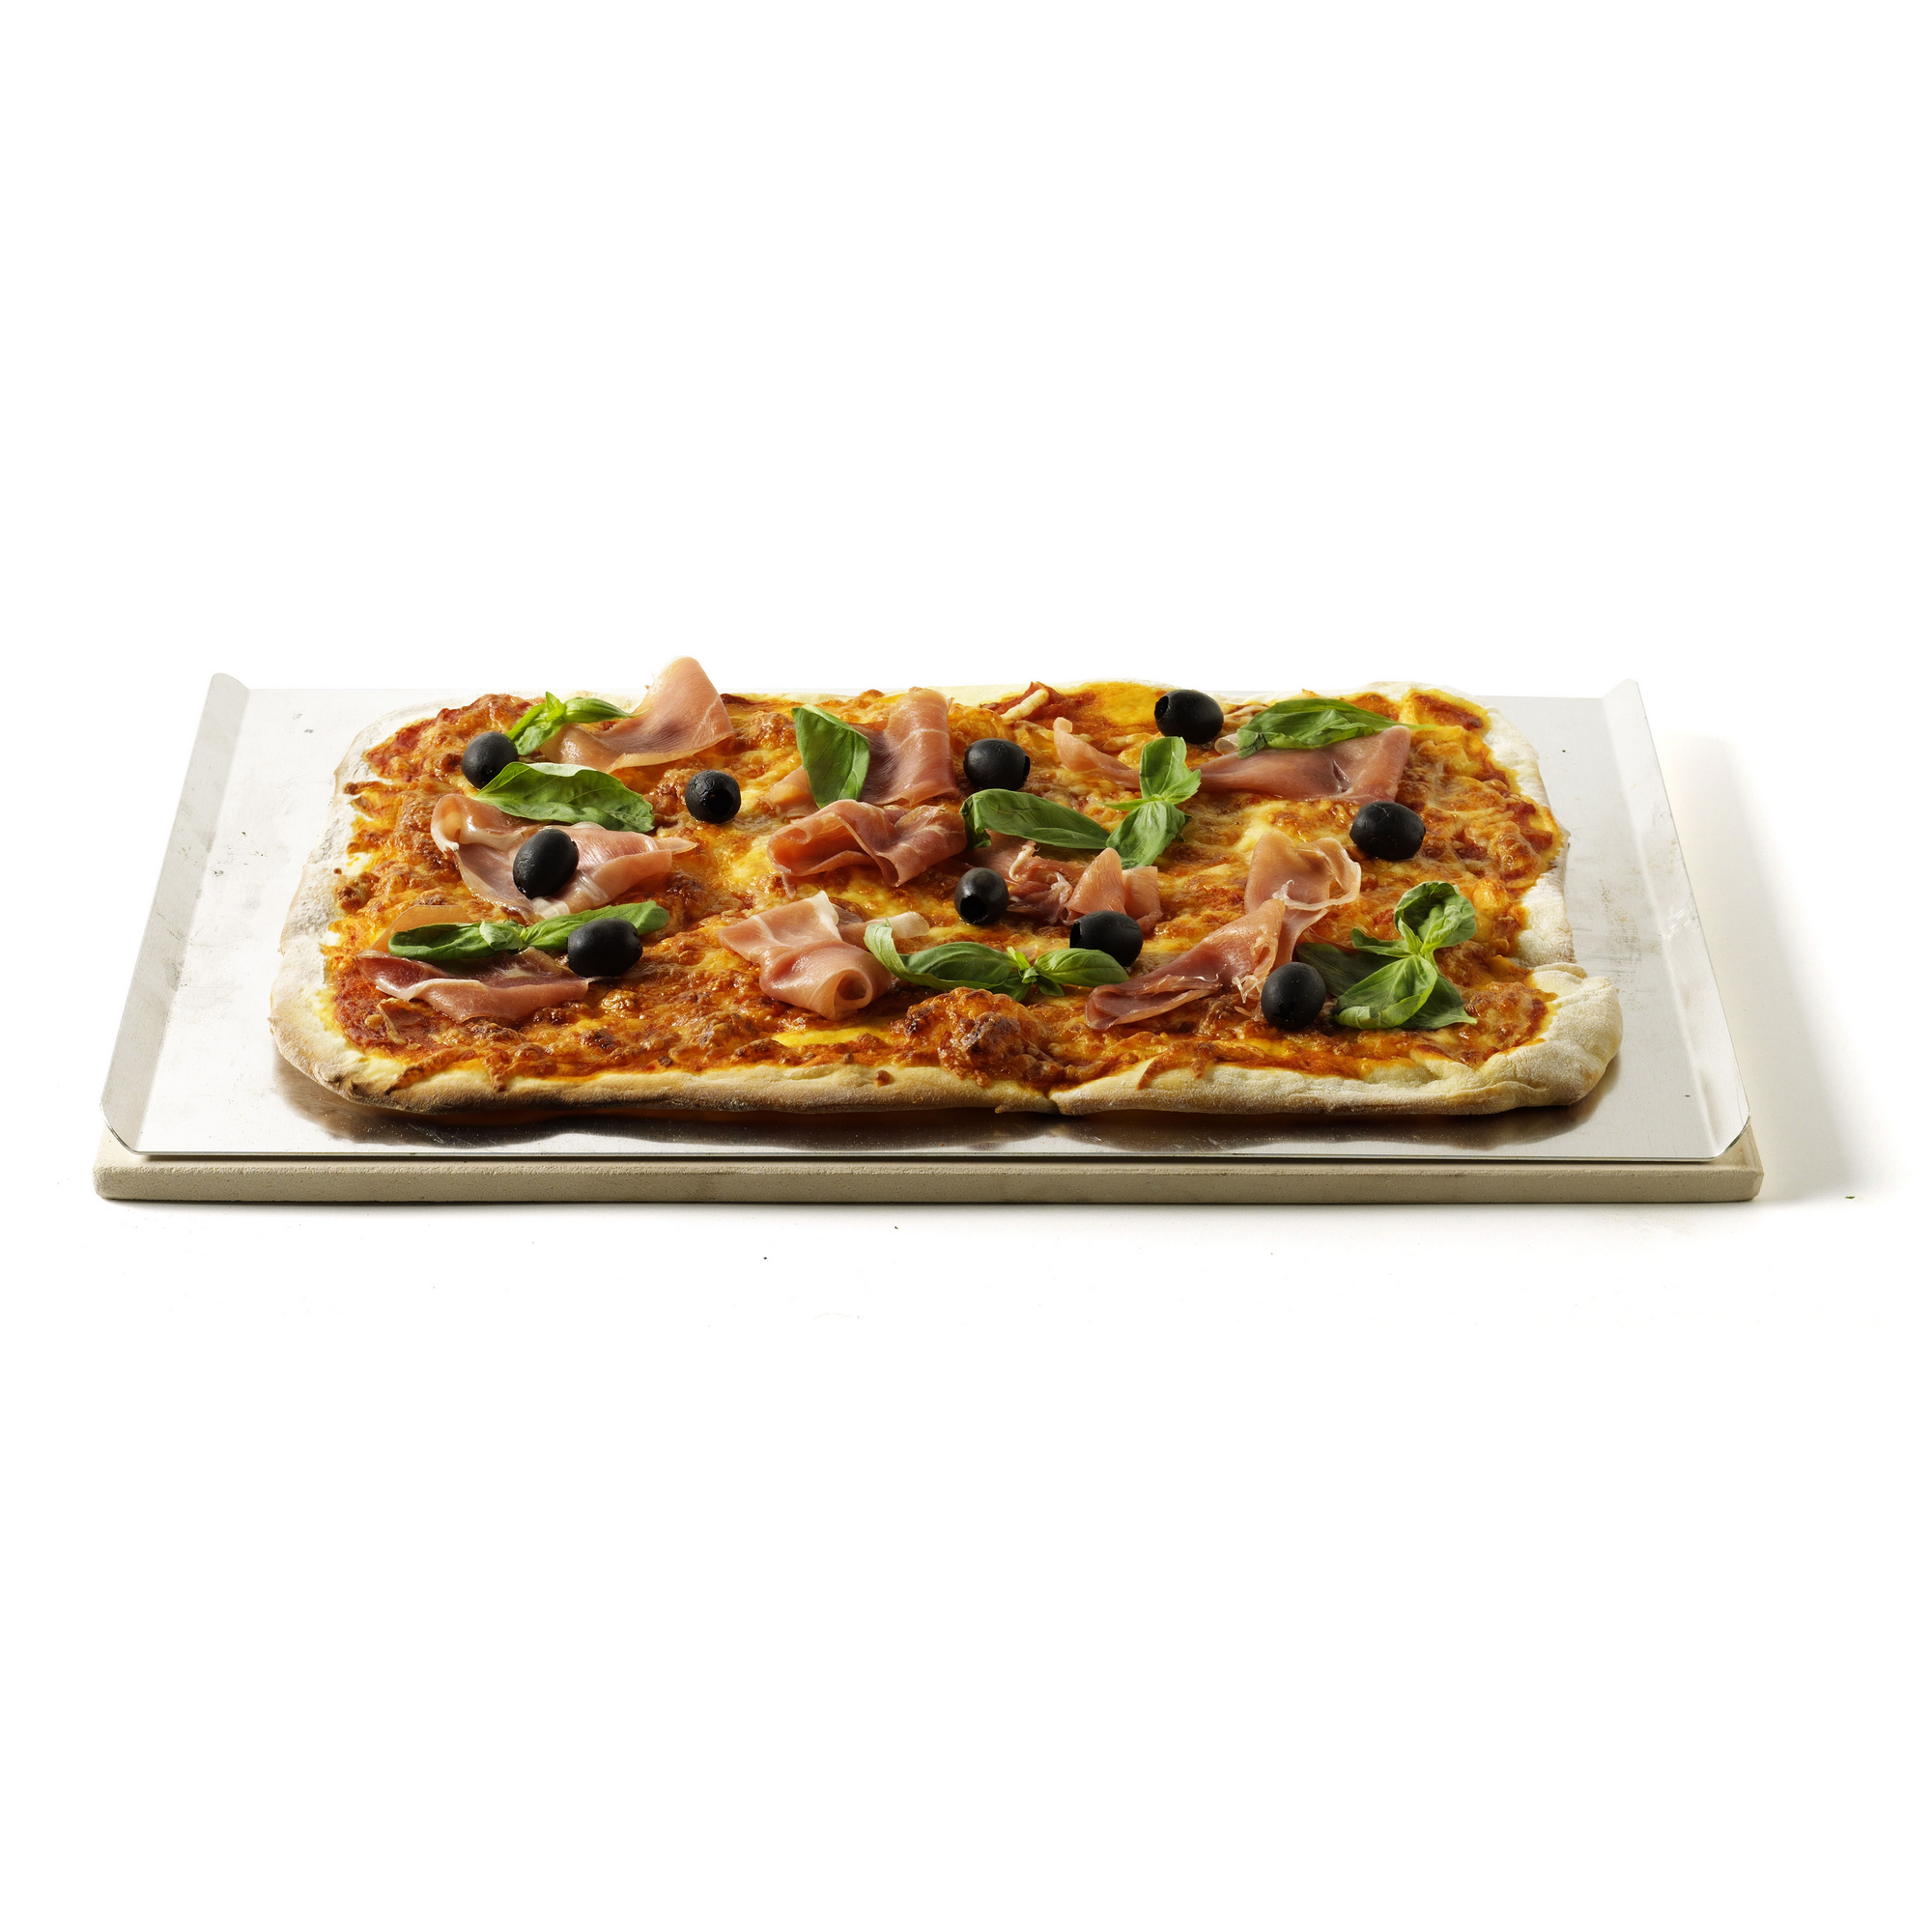 Pizzastein mit Alu-Blech rechteckig 44 x 30 cm + product picture